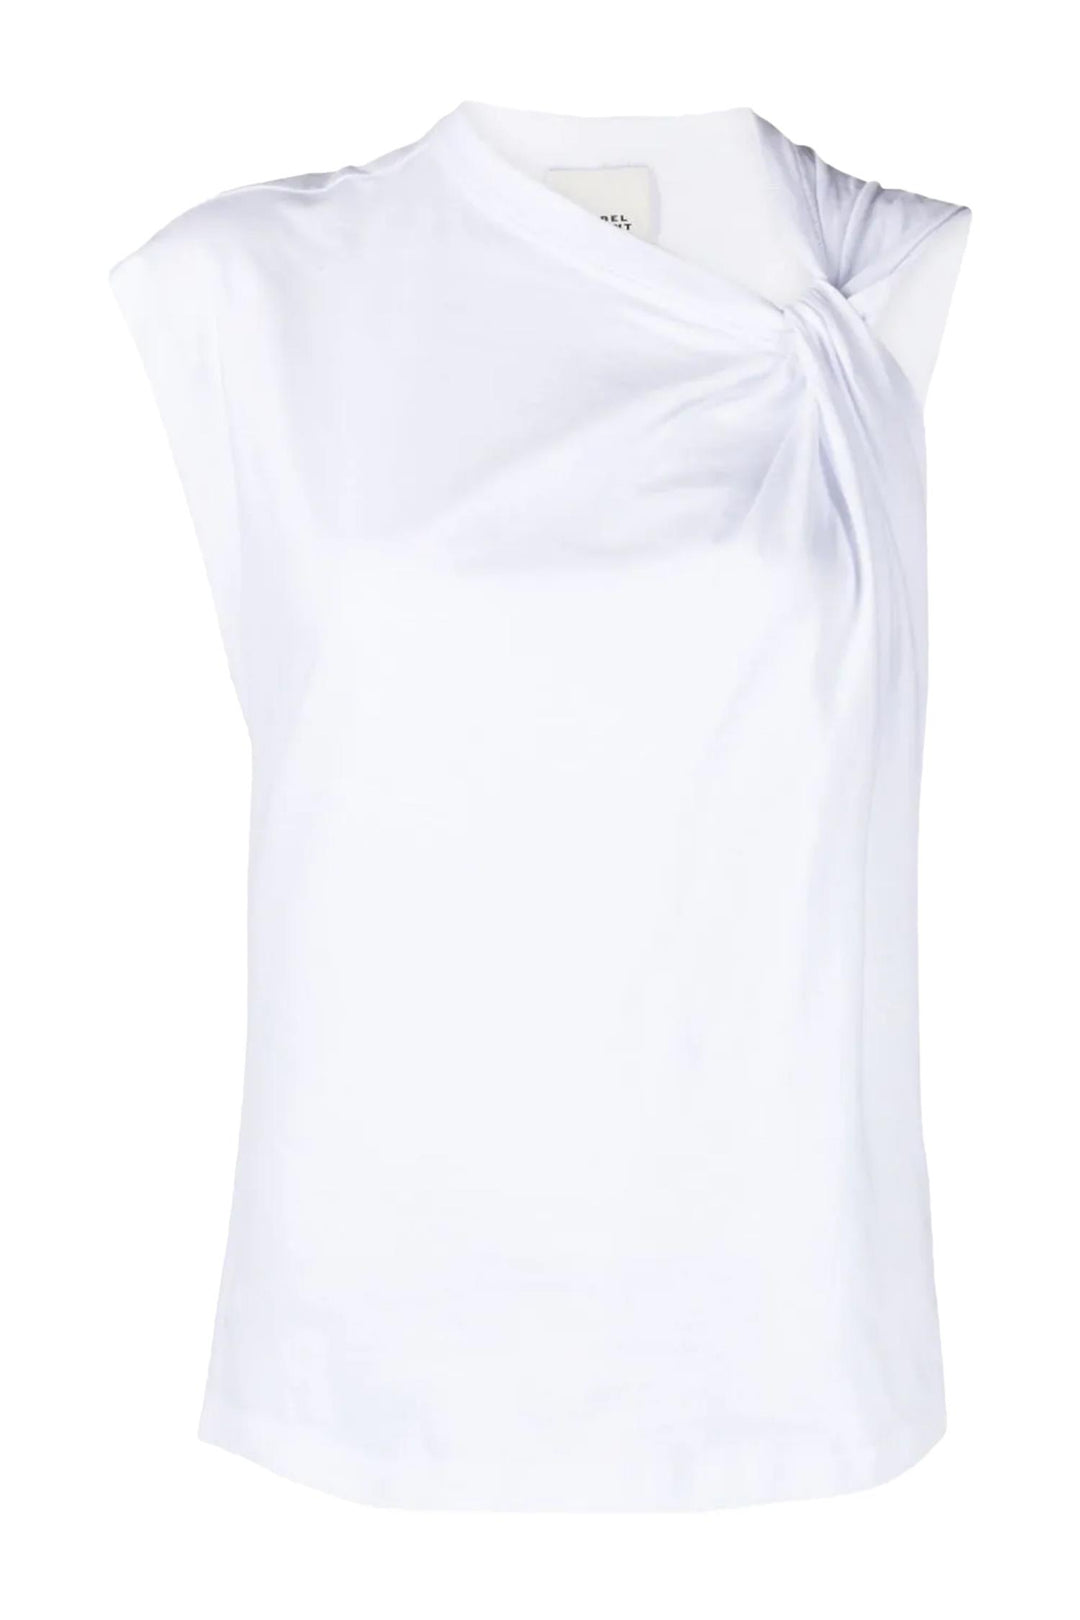 Nayda T-Shirt White